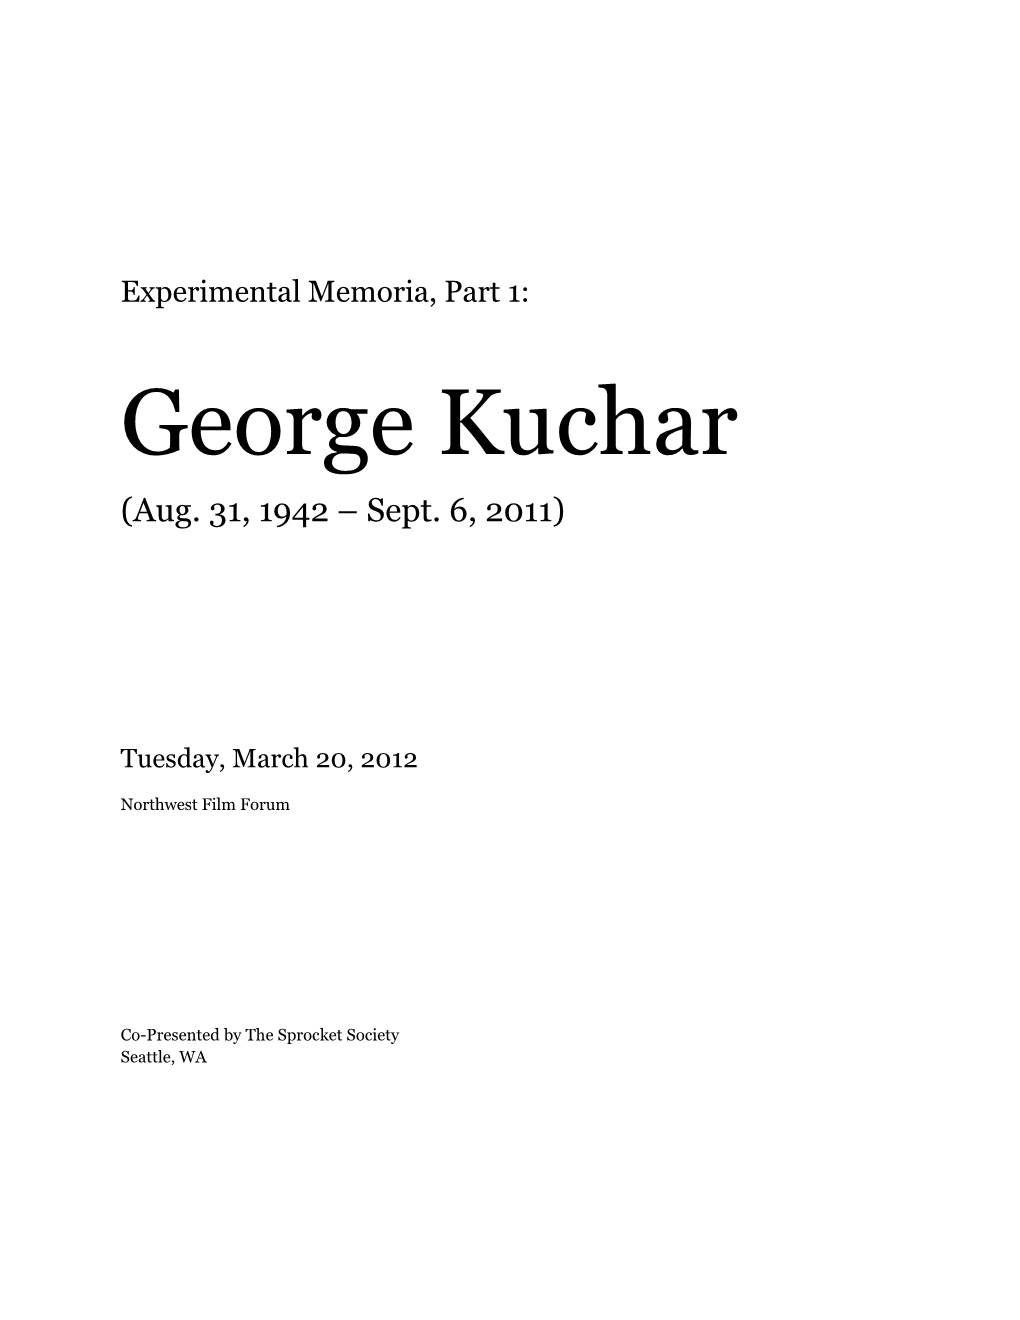 George Kuchar (Aug